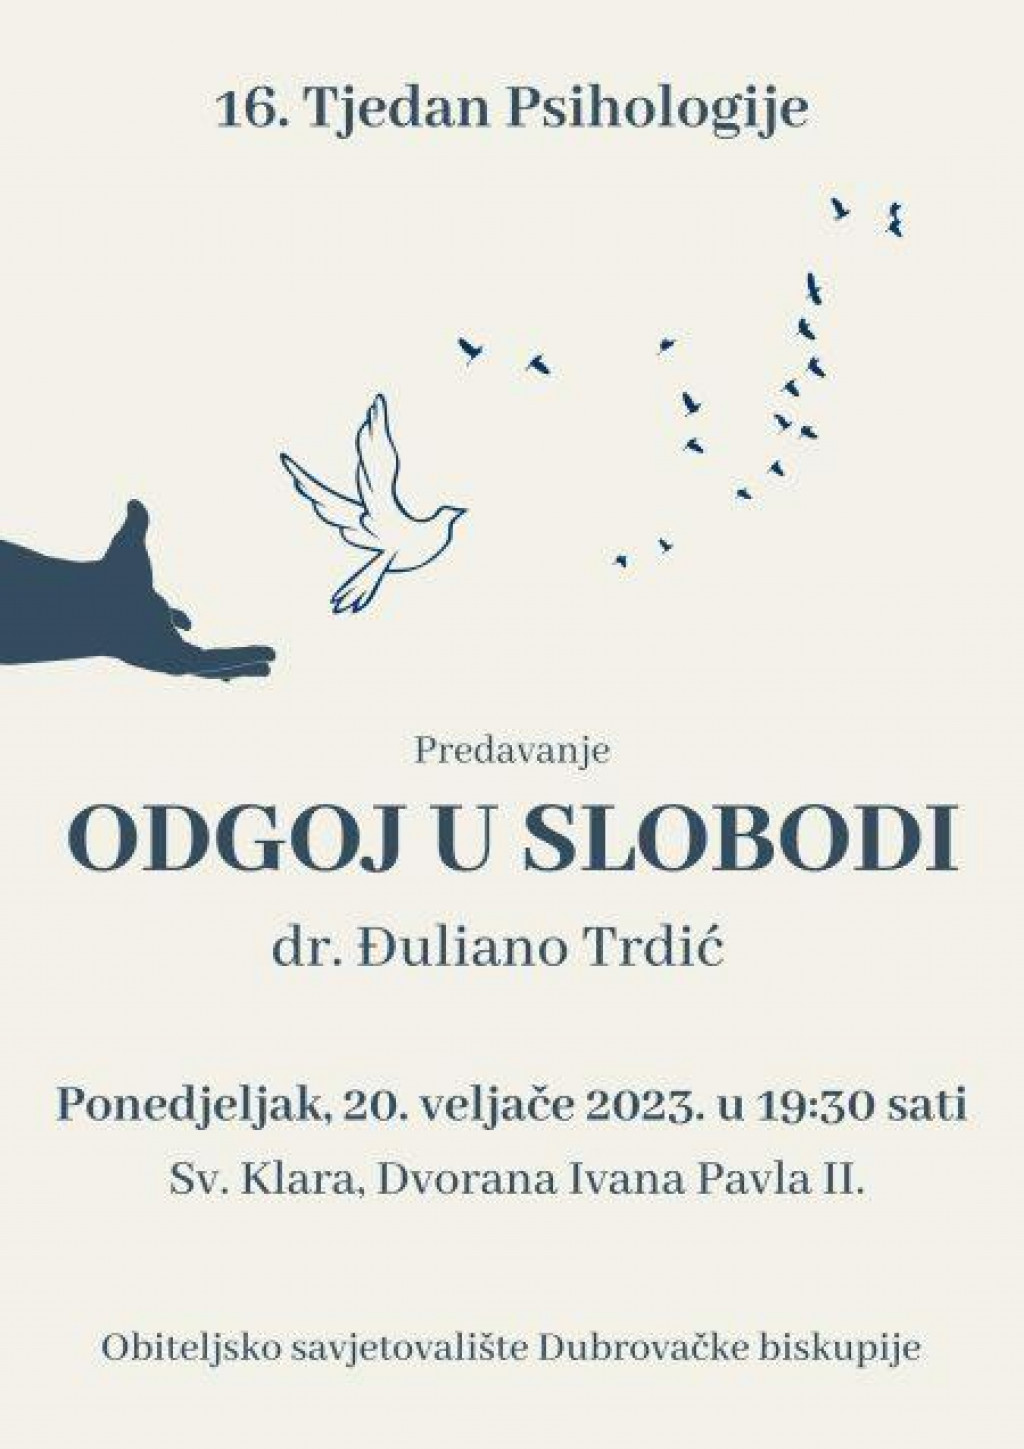 &lt;p&gt;Predavanje ”Odgoj u slobodi” don Đulijana Trdića u sklopu 16. Tjedna psihologije u Hrvatskoj&lt;/p&gt;